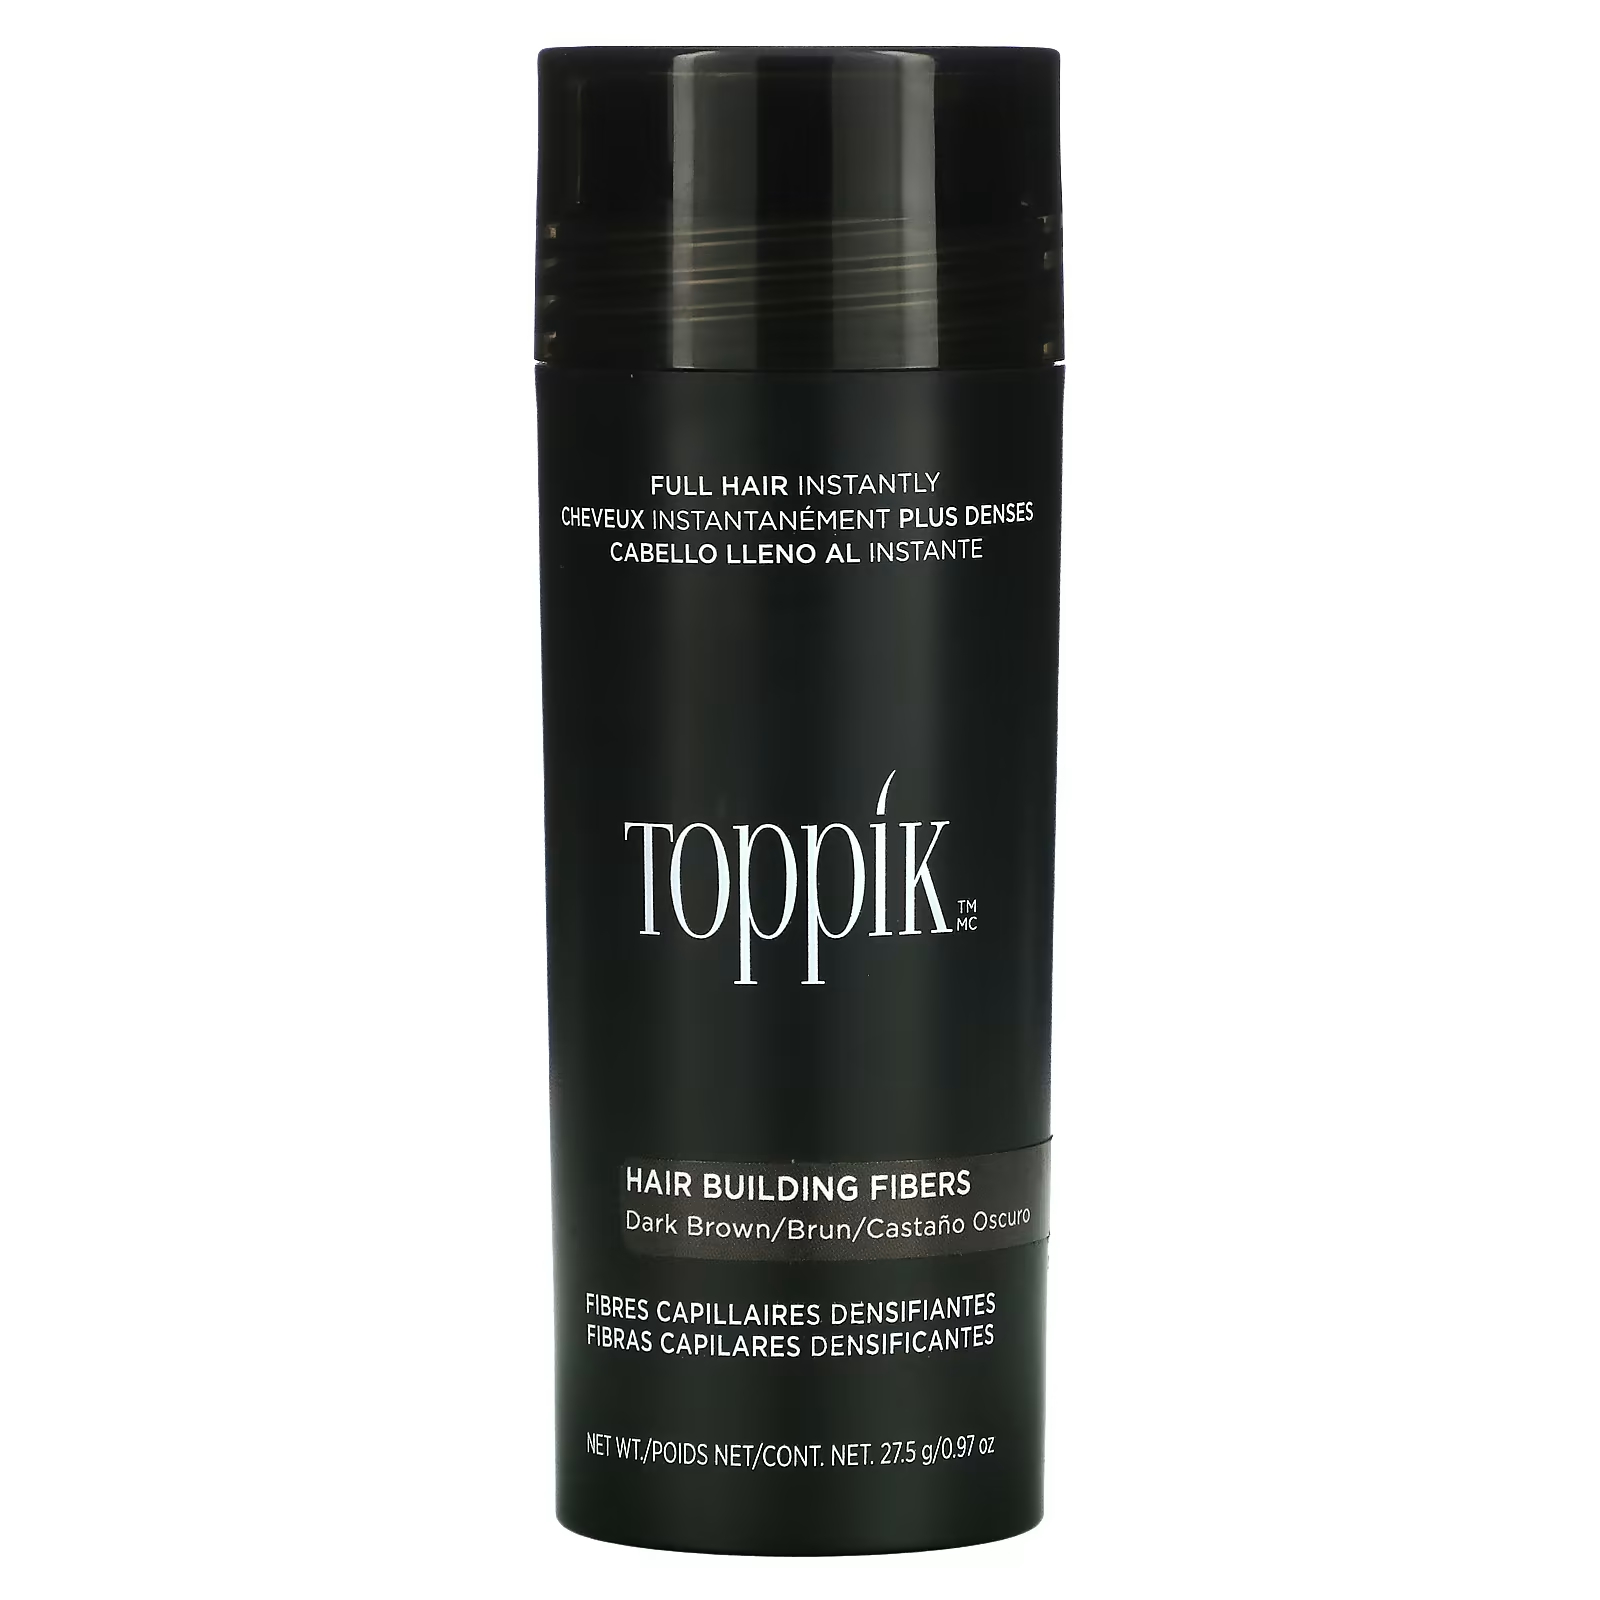 Загуститель для волос Toppik Hair Building Fibers темно-коричневый toppik пудра загуститель hair building fibers для волос цвет брюнет 3г